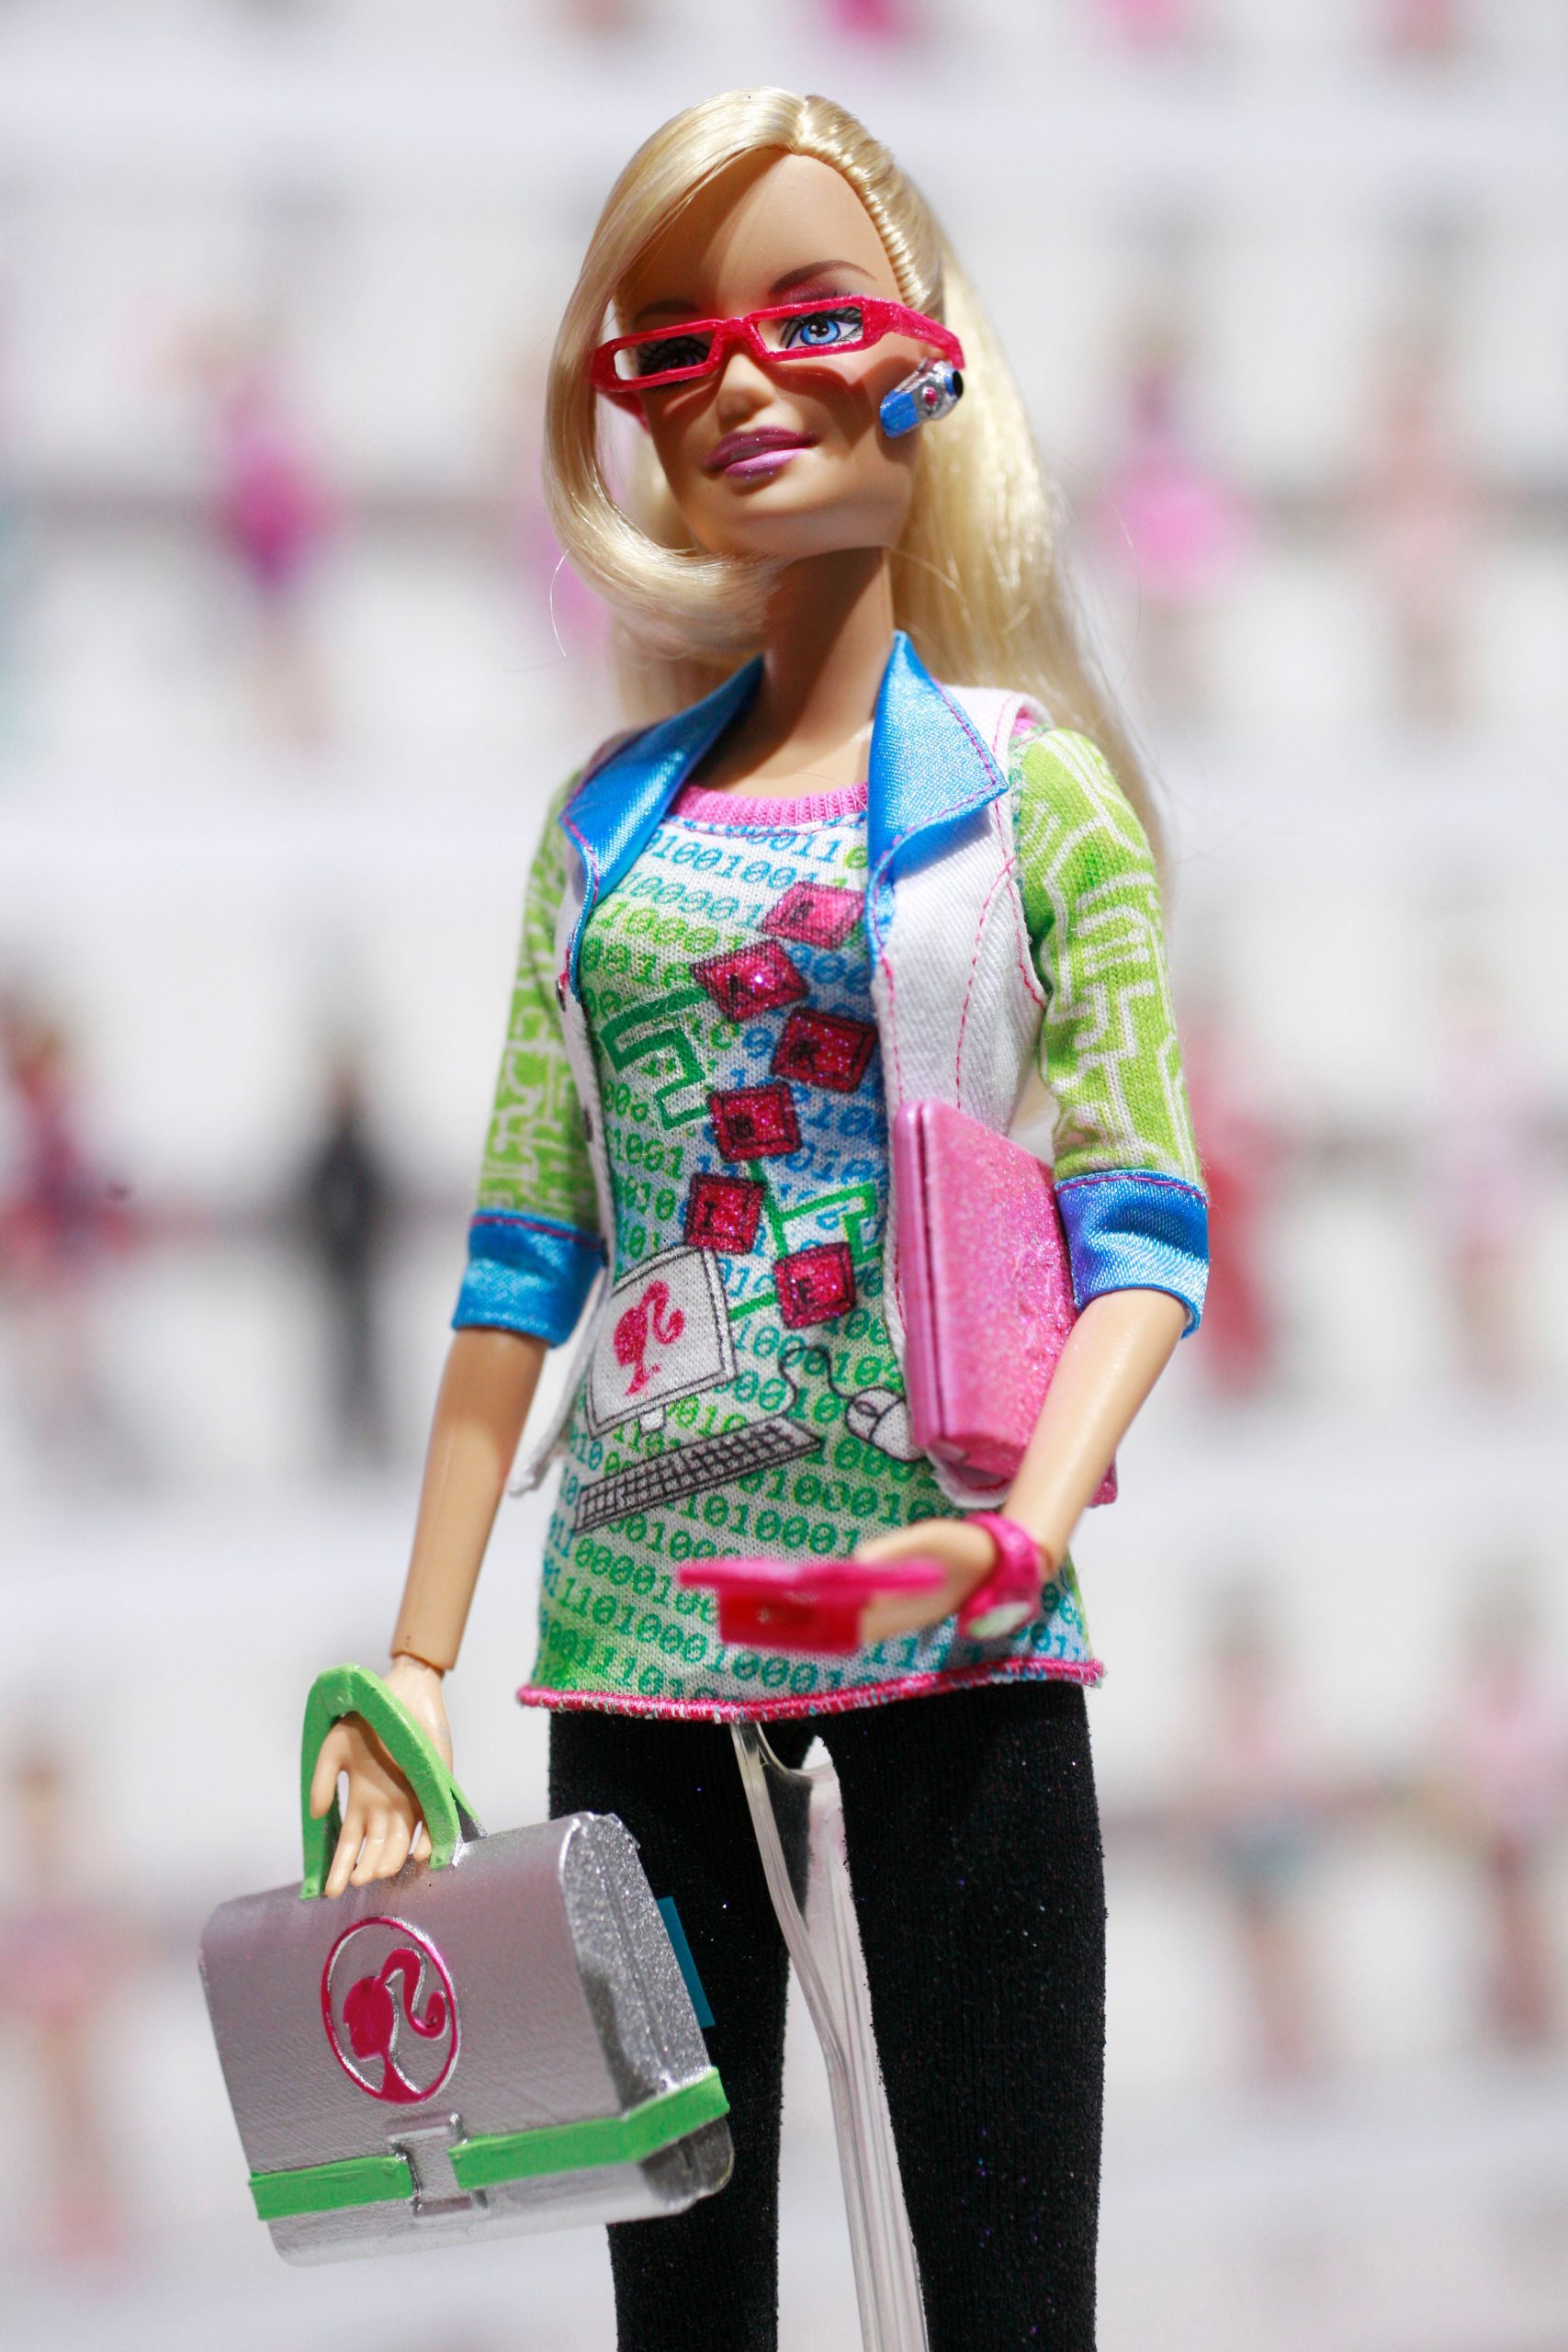 Barbie Controverse e Scandali nella Storia Mattel!